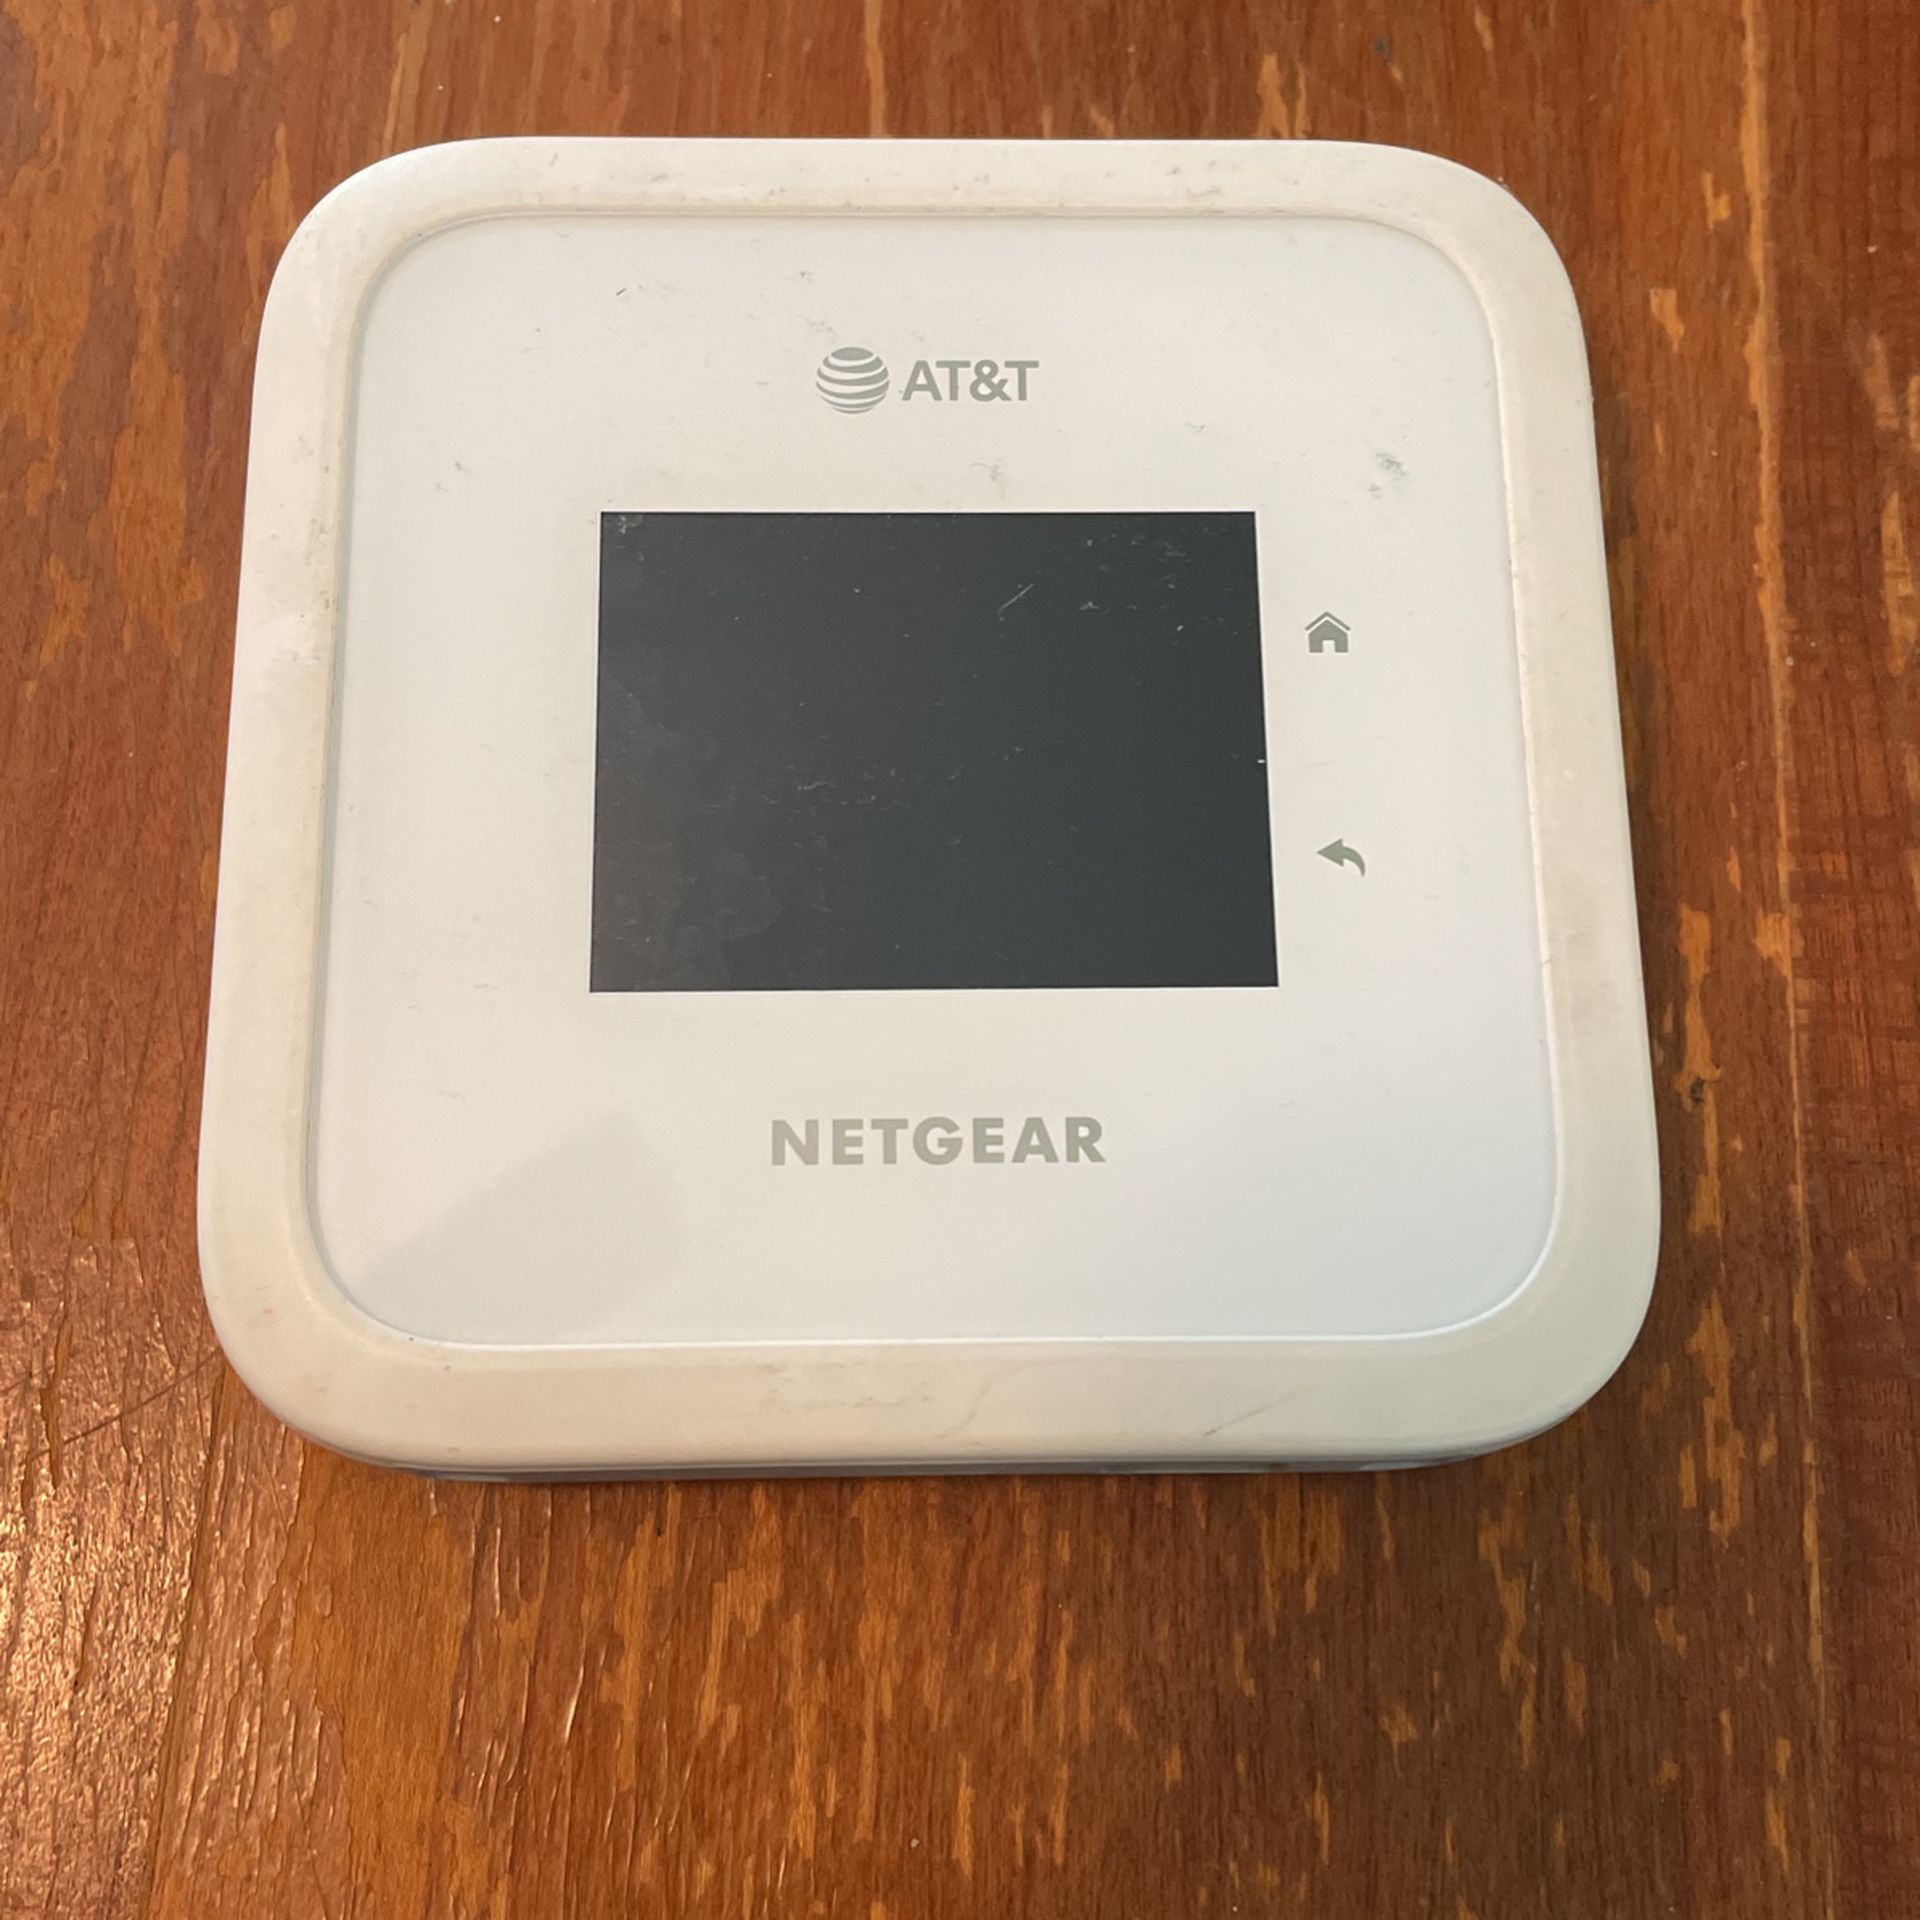 Netgear Hotspot From AT&T 